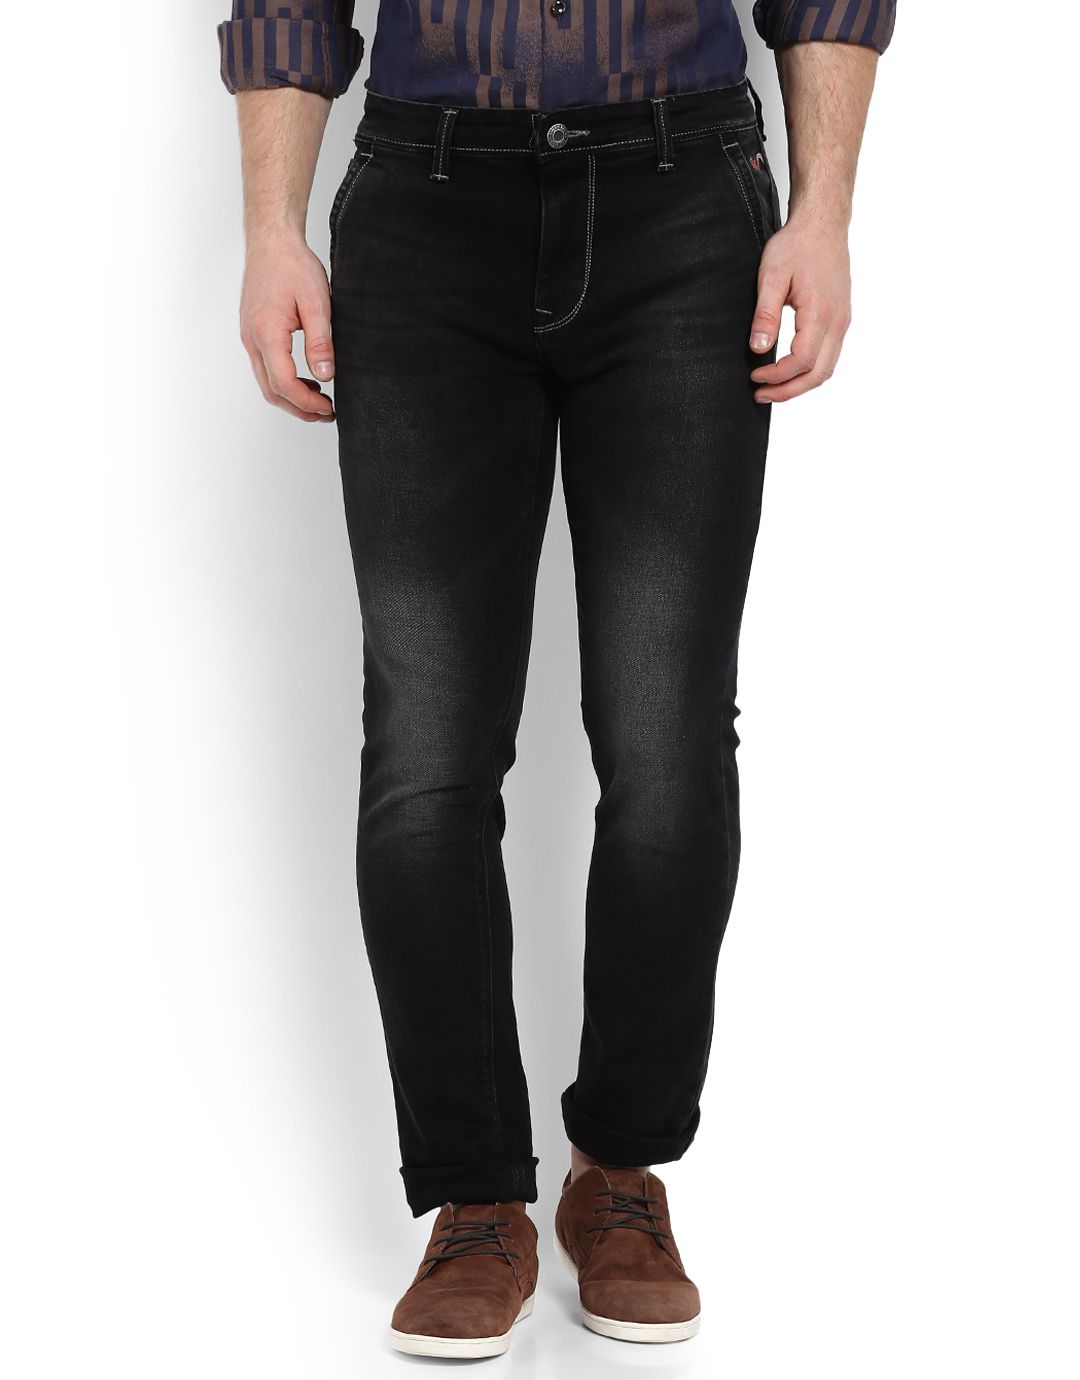 lawman pg3 black jeans